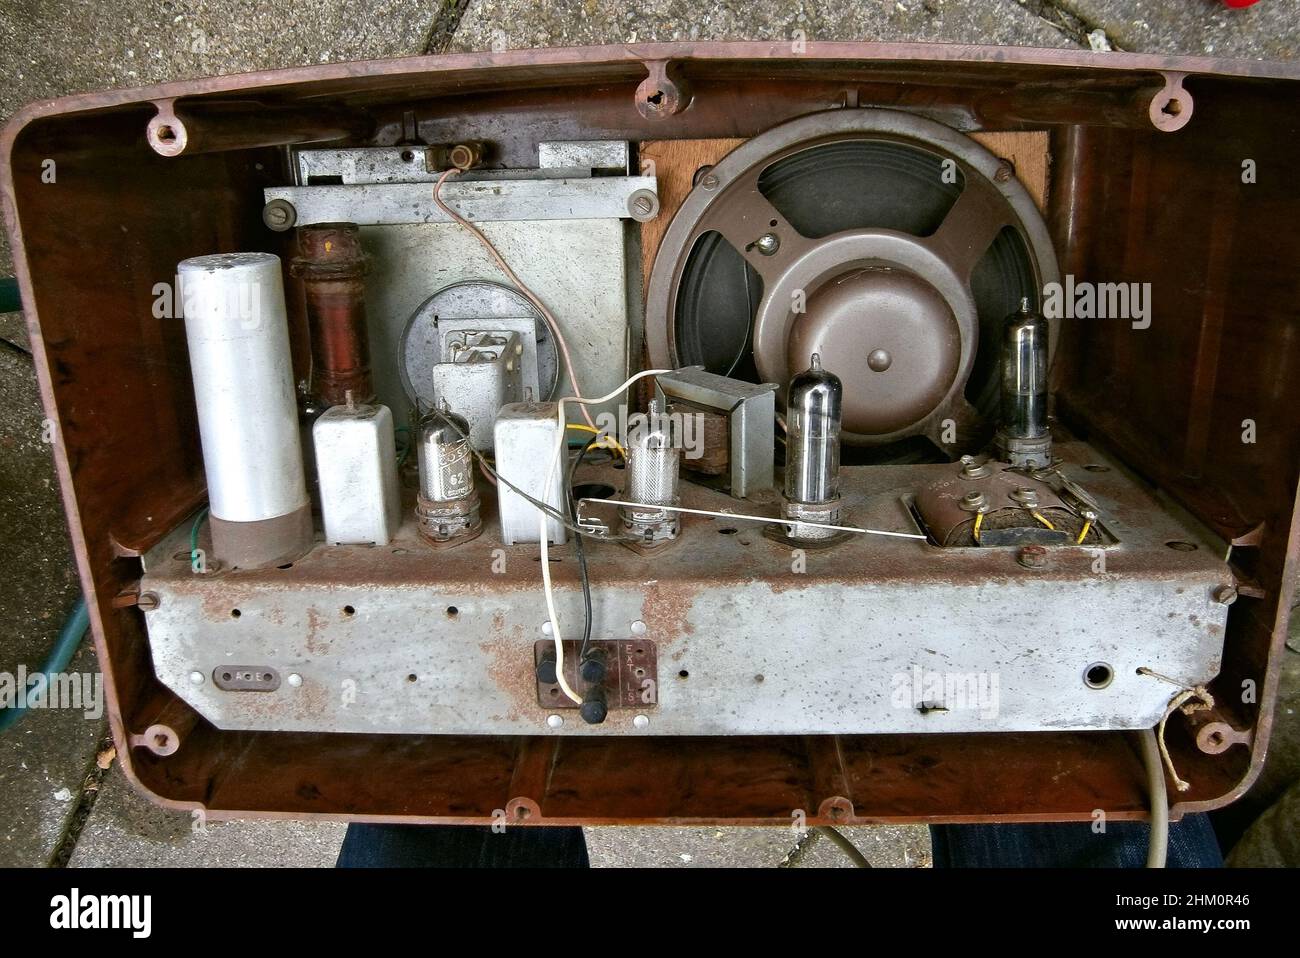 À l'intérieur d'une radio COSSOR Melody Maker 1949 vintage avec haut-parleur, vannes et autres composants électriques Banque D'Images